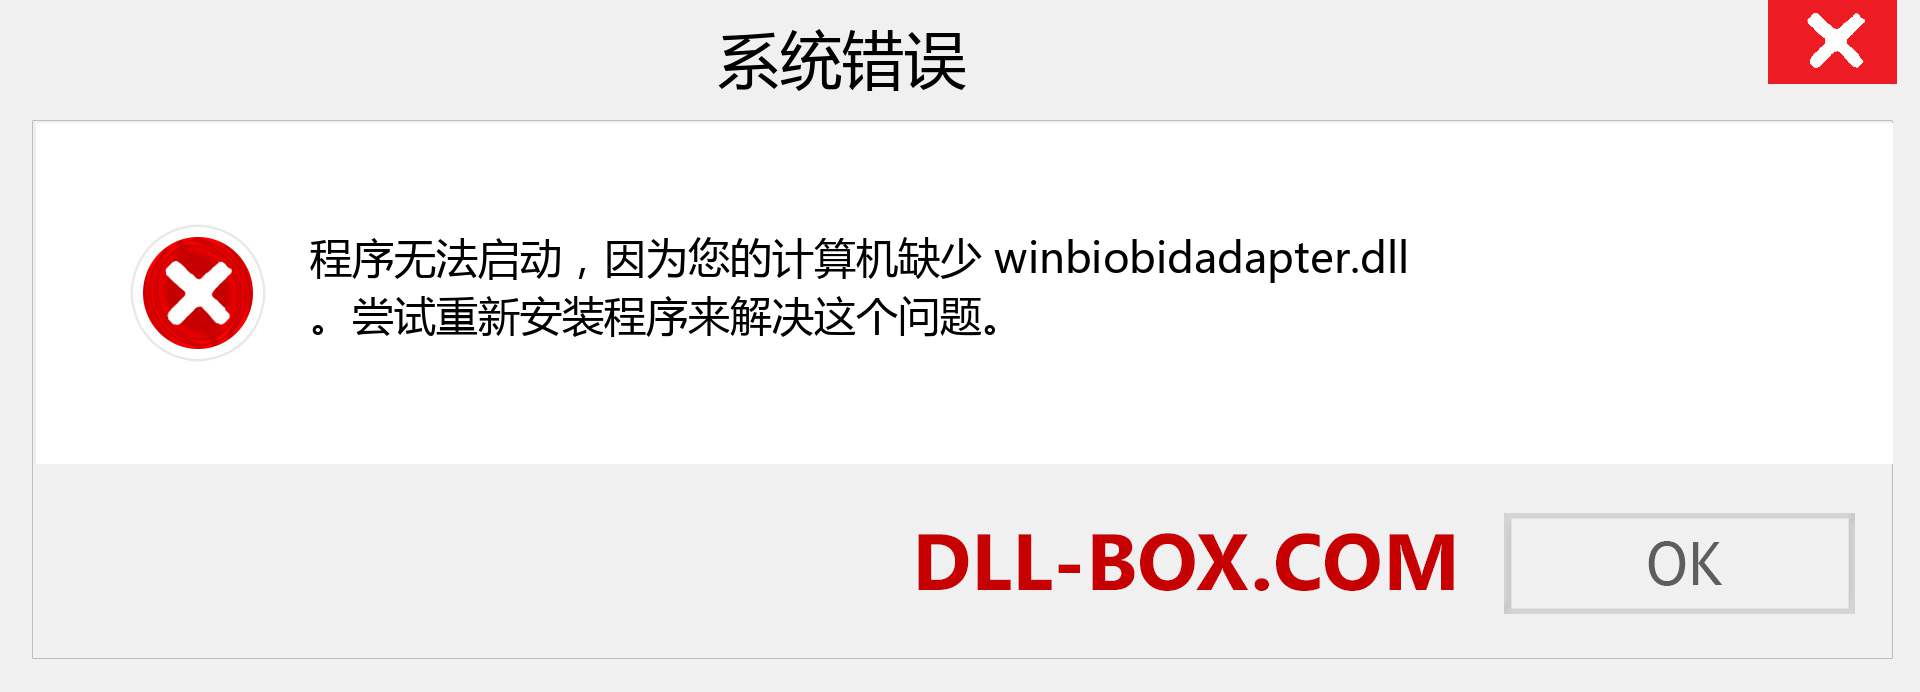 winbiobidadapter.dll 文件丢失？。 适用于 Windows 7、8、10 的下载 - 修复 Windows、照片、图像上的 winbiobidadapter dll 丢失错误